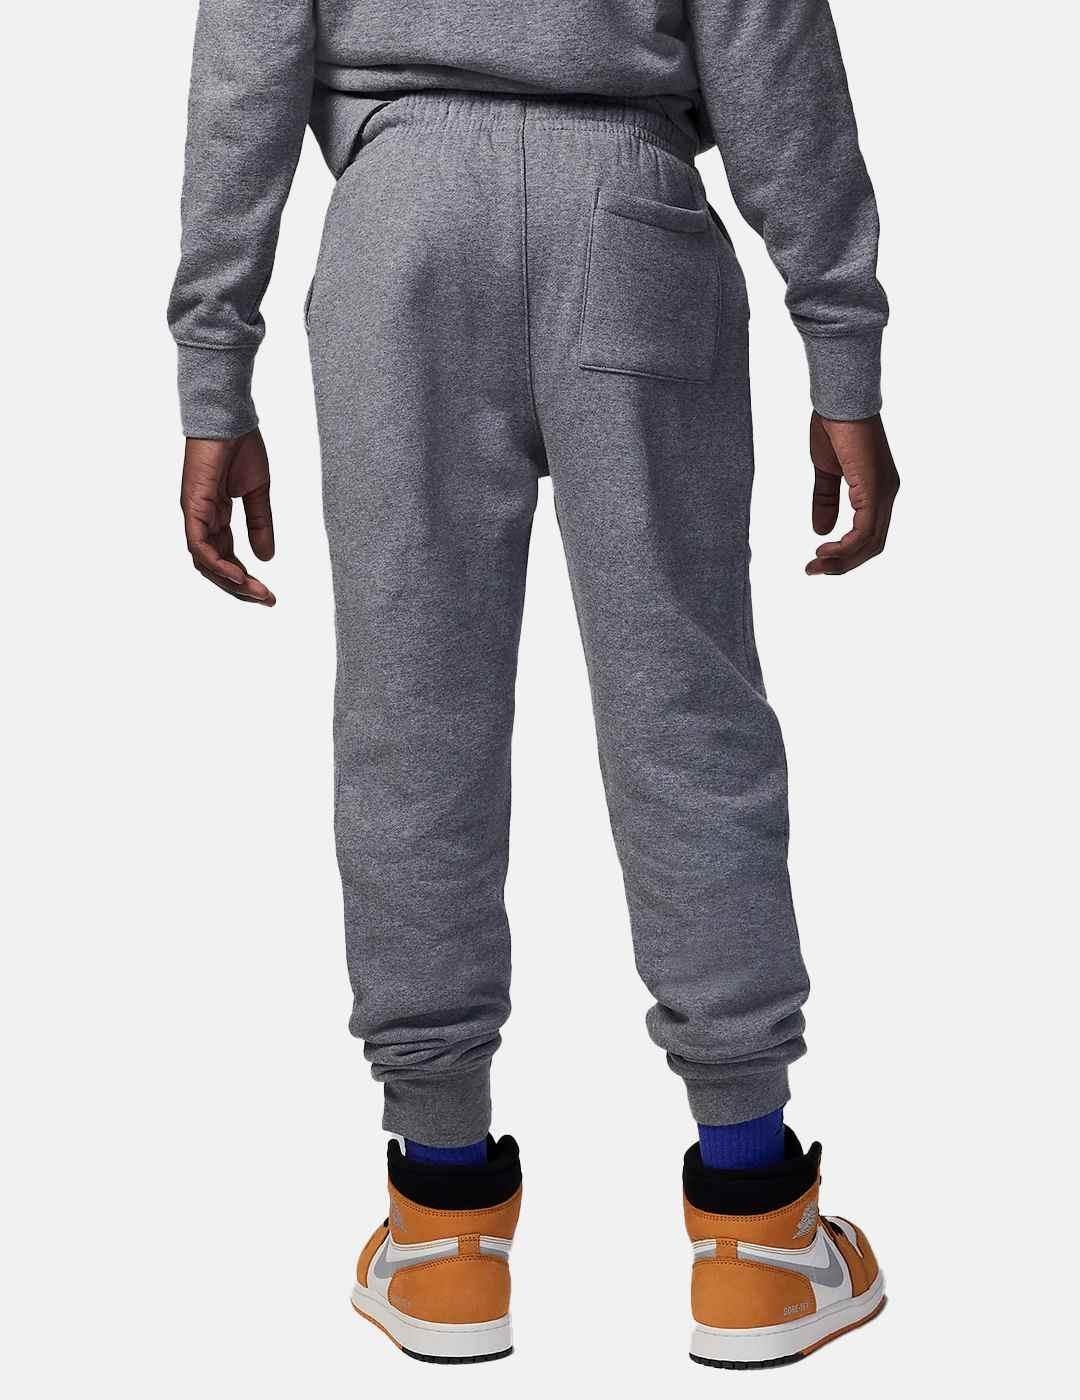 Pantalones Jordan Jumpman Essentials Gris Carbón